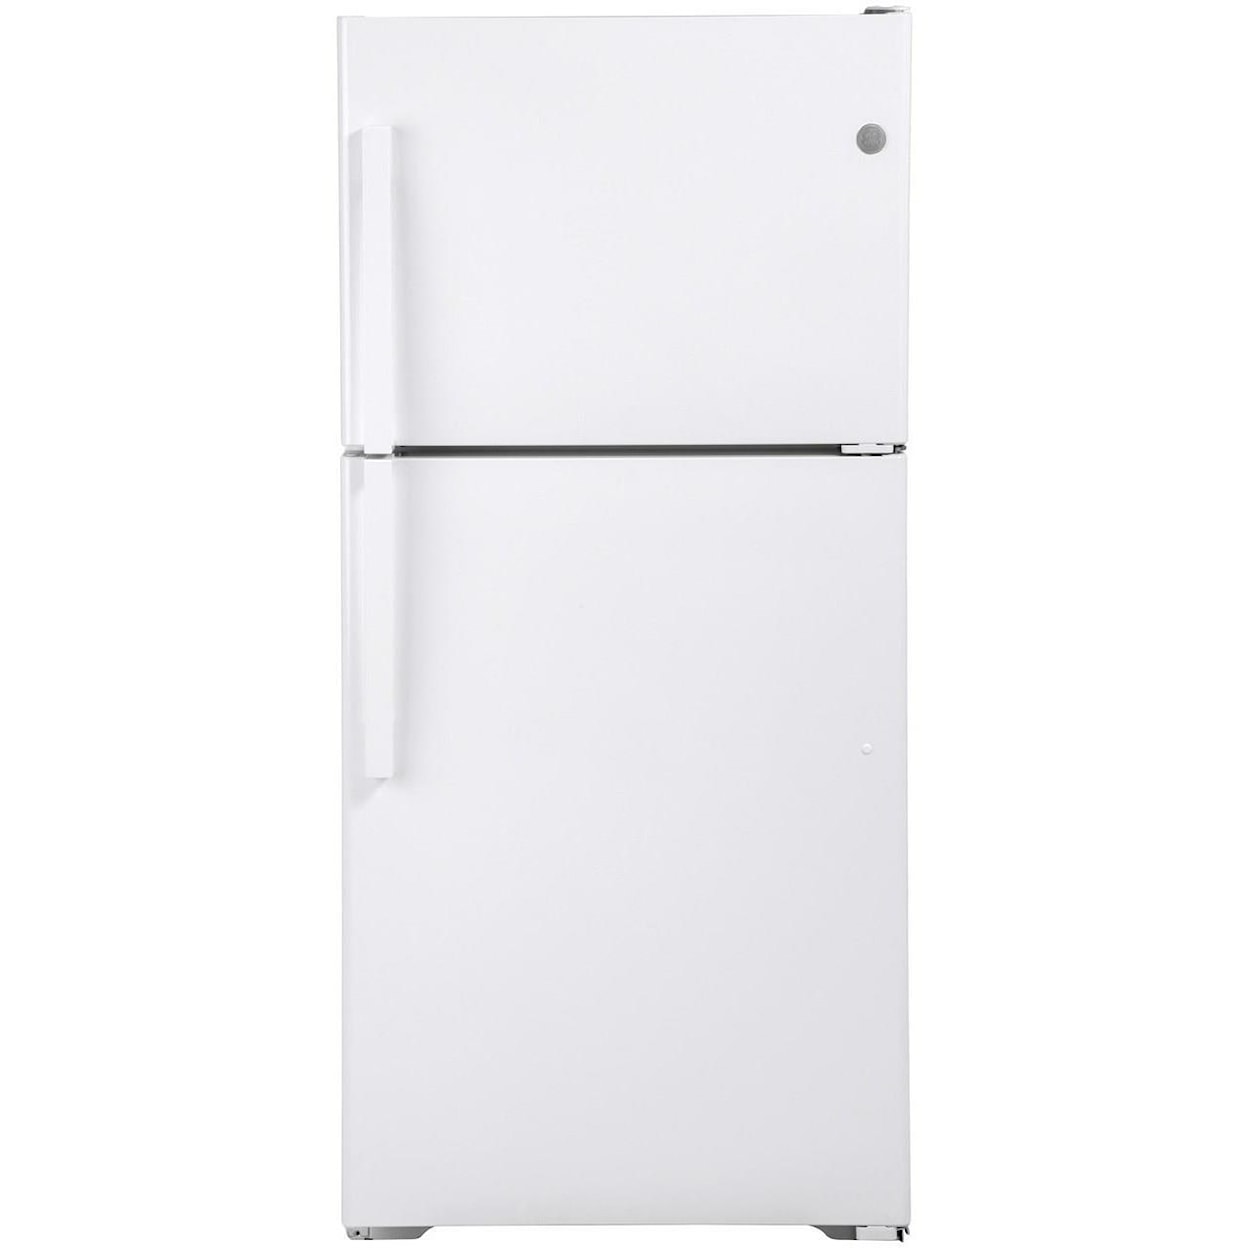 GE Appliances GE Top-Freezer Refrigerators GE® ENERGY STAR® 19.2 Cu. Ft. Top-Freezer Re